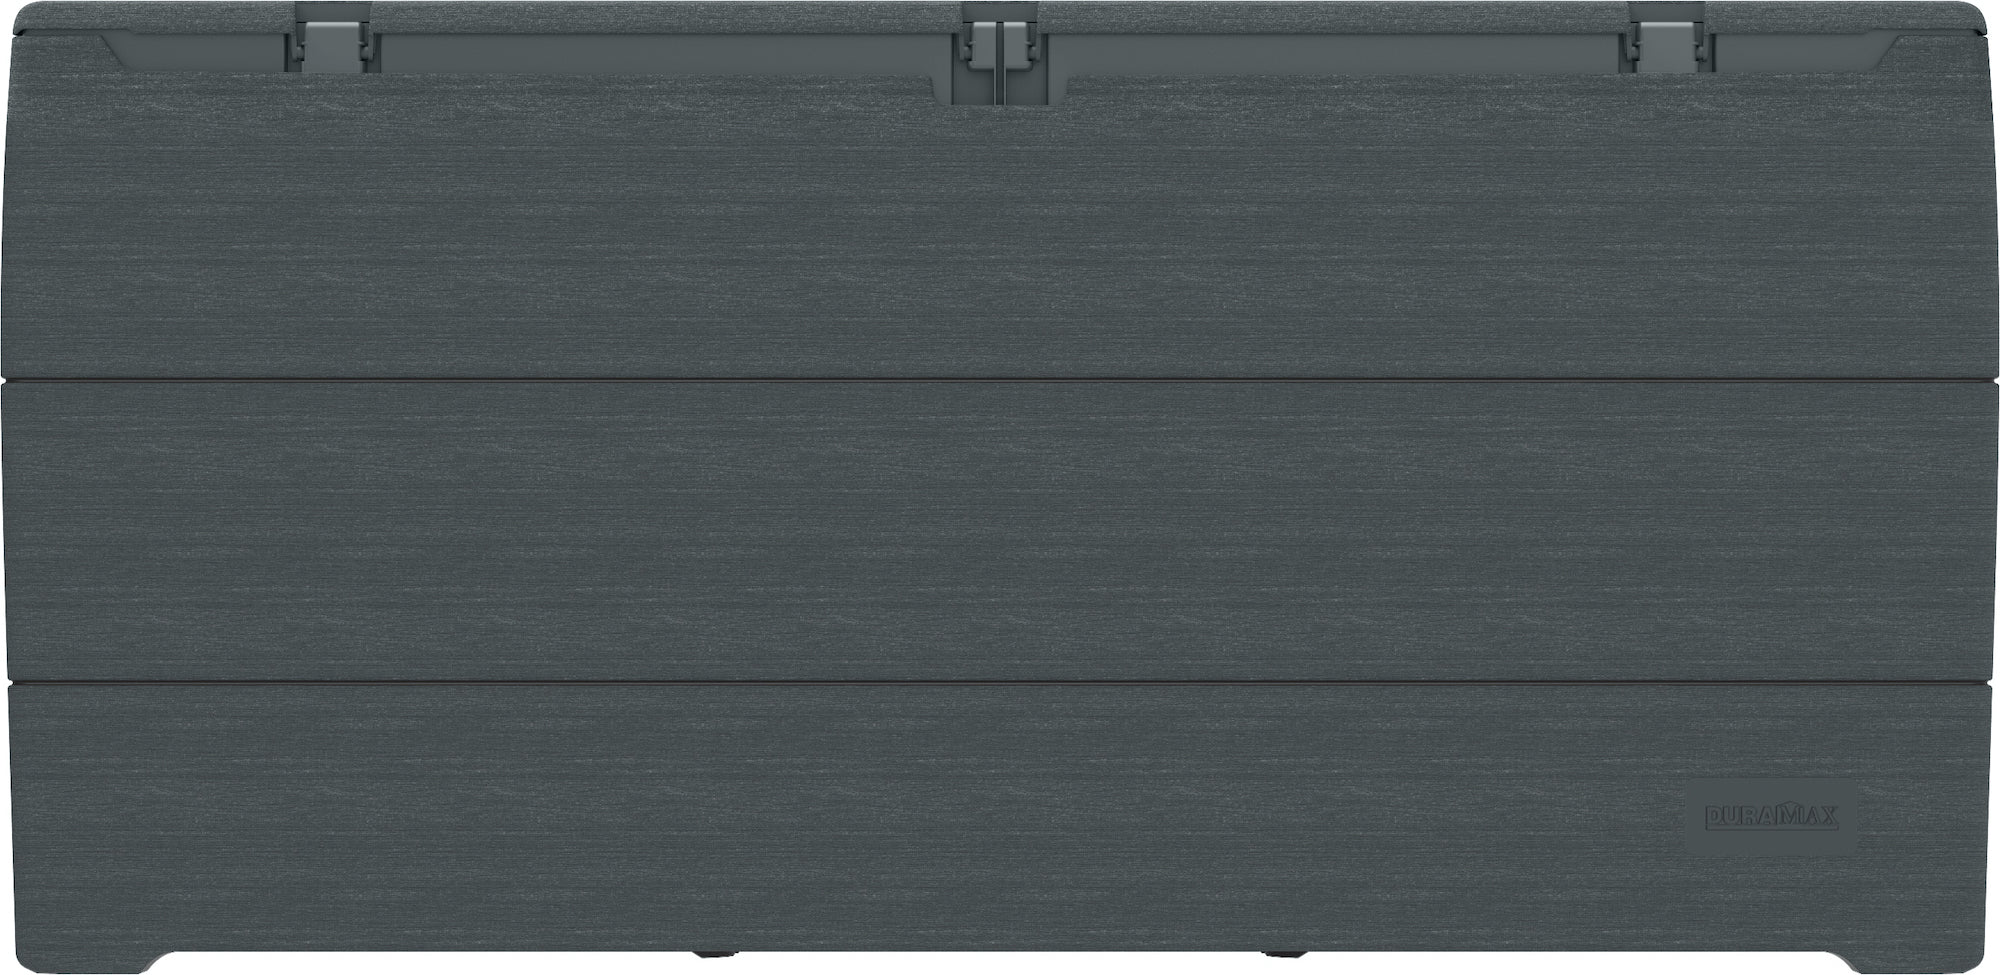 Duramax 71 Gallon Gray Outdoor Resin Deck Box, Garden Furniture Organizer